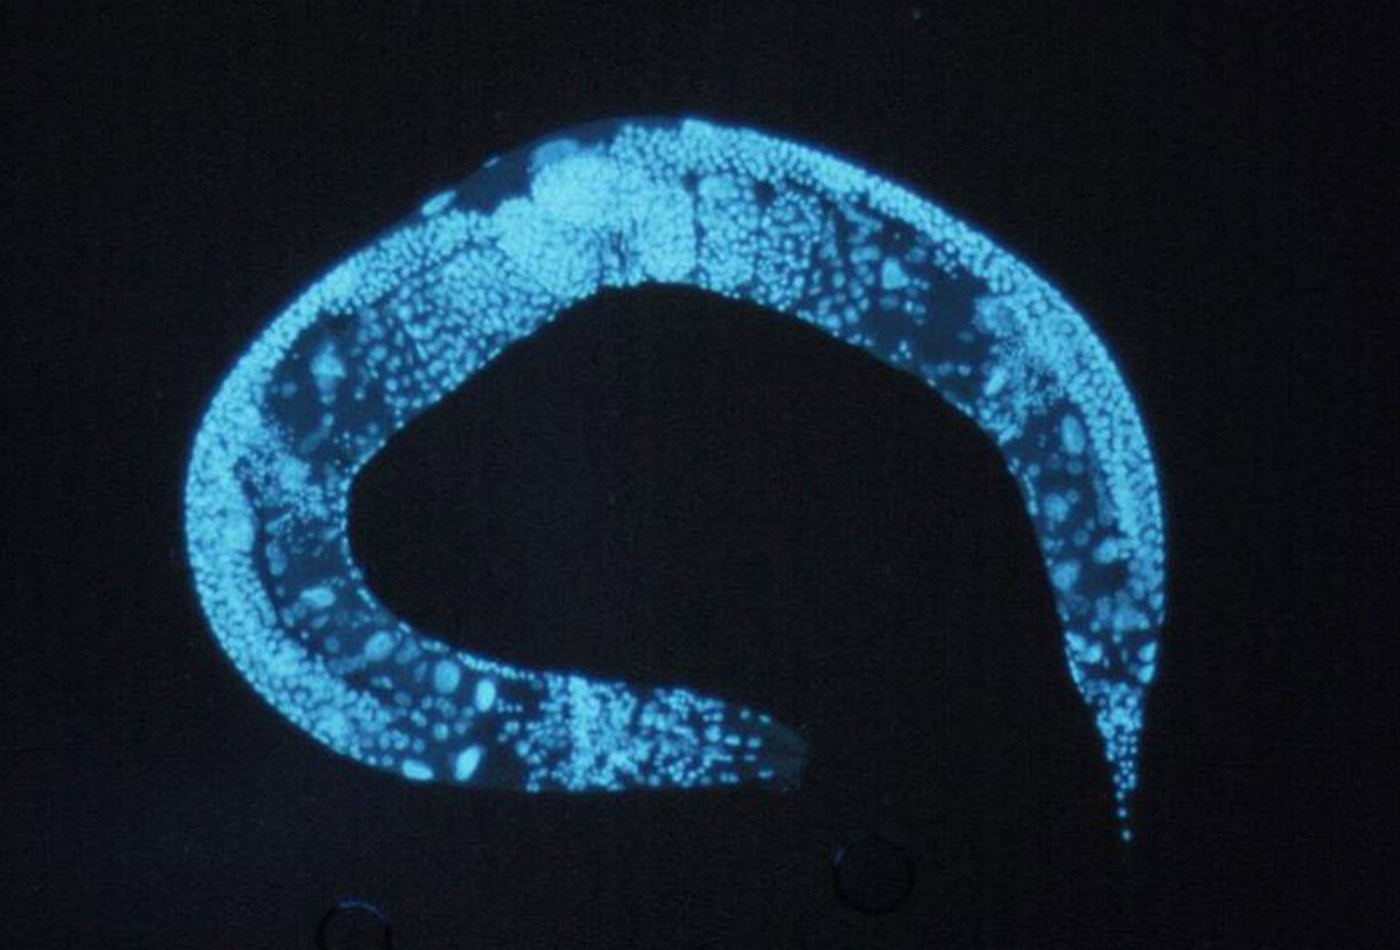 Enlarged C. elegans.